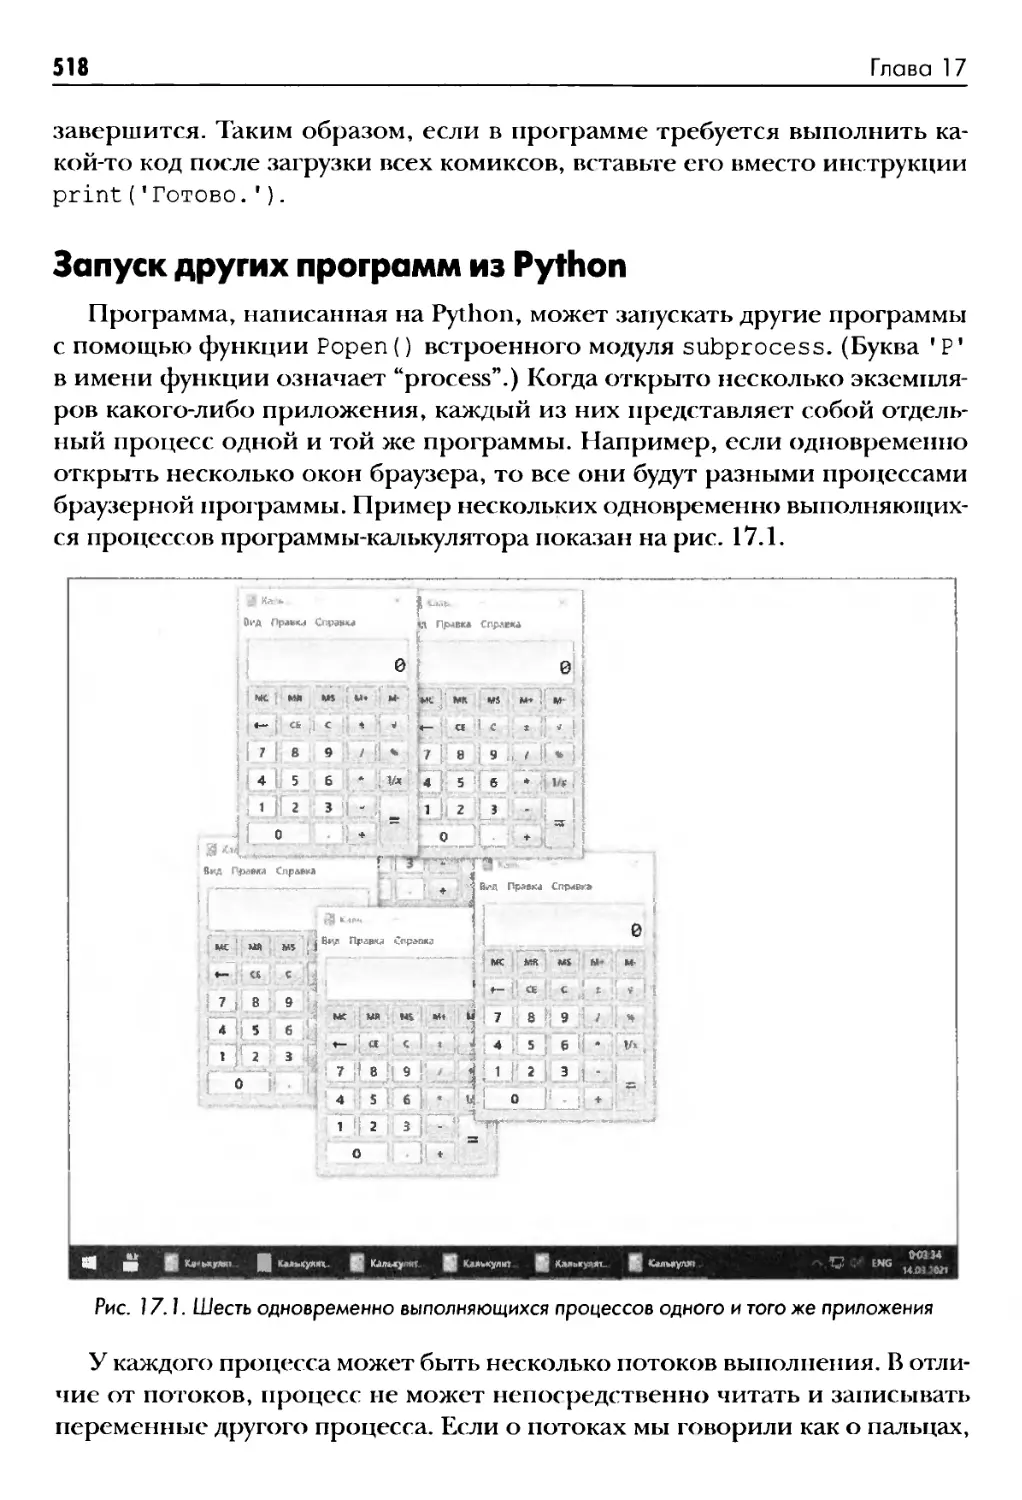 Запуск других программ из Python